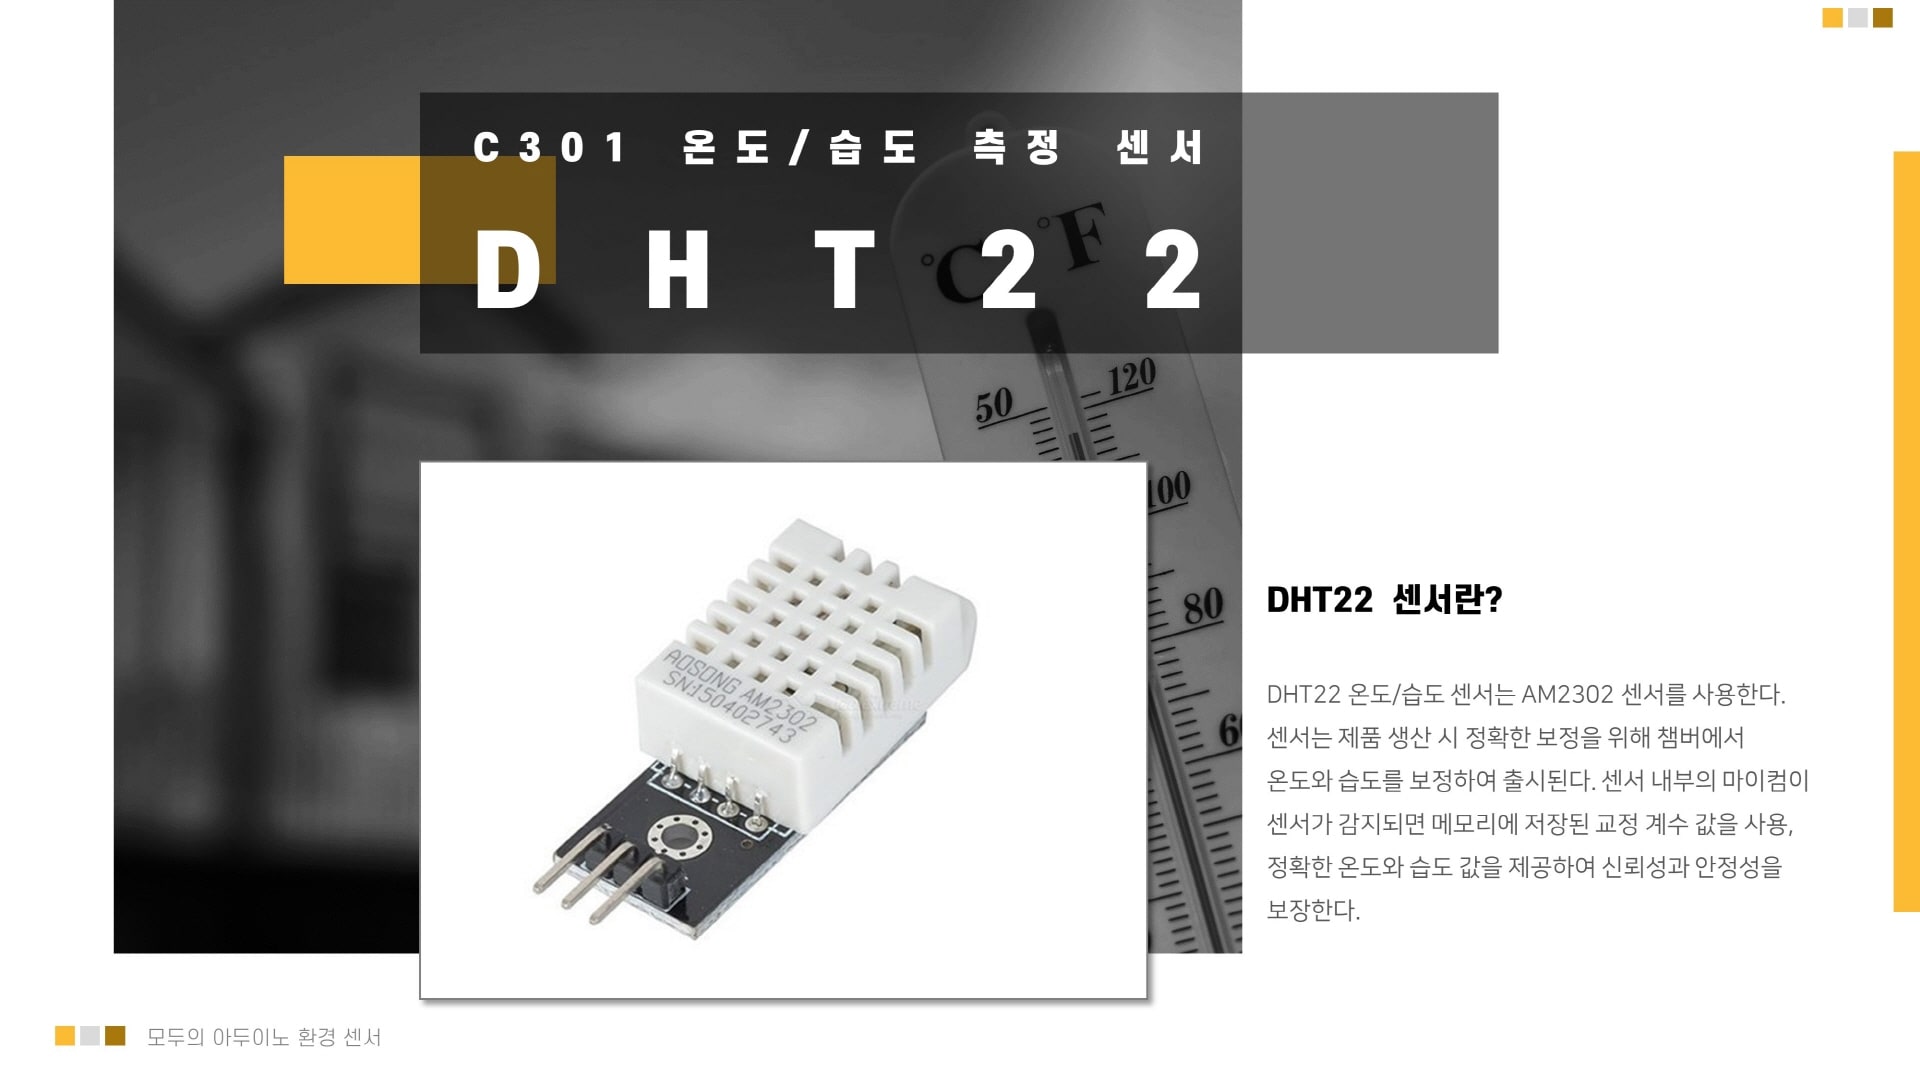 DHT22 온도/습도 아두이노 센서 이미지 입니다.